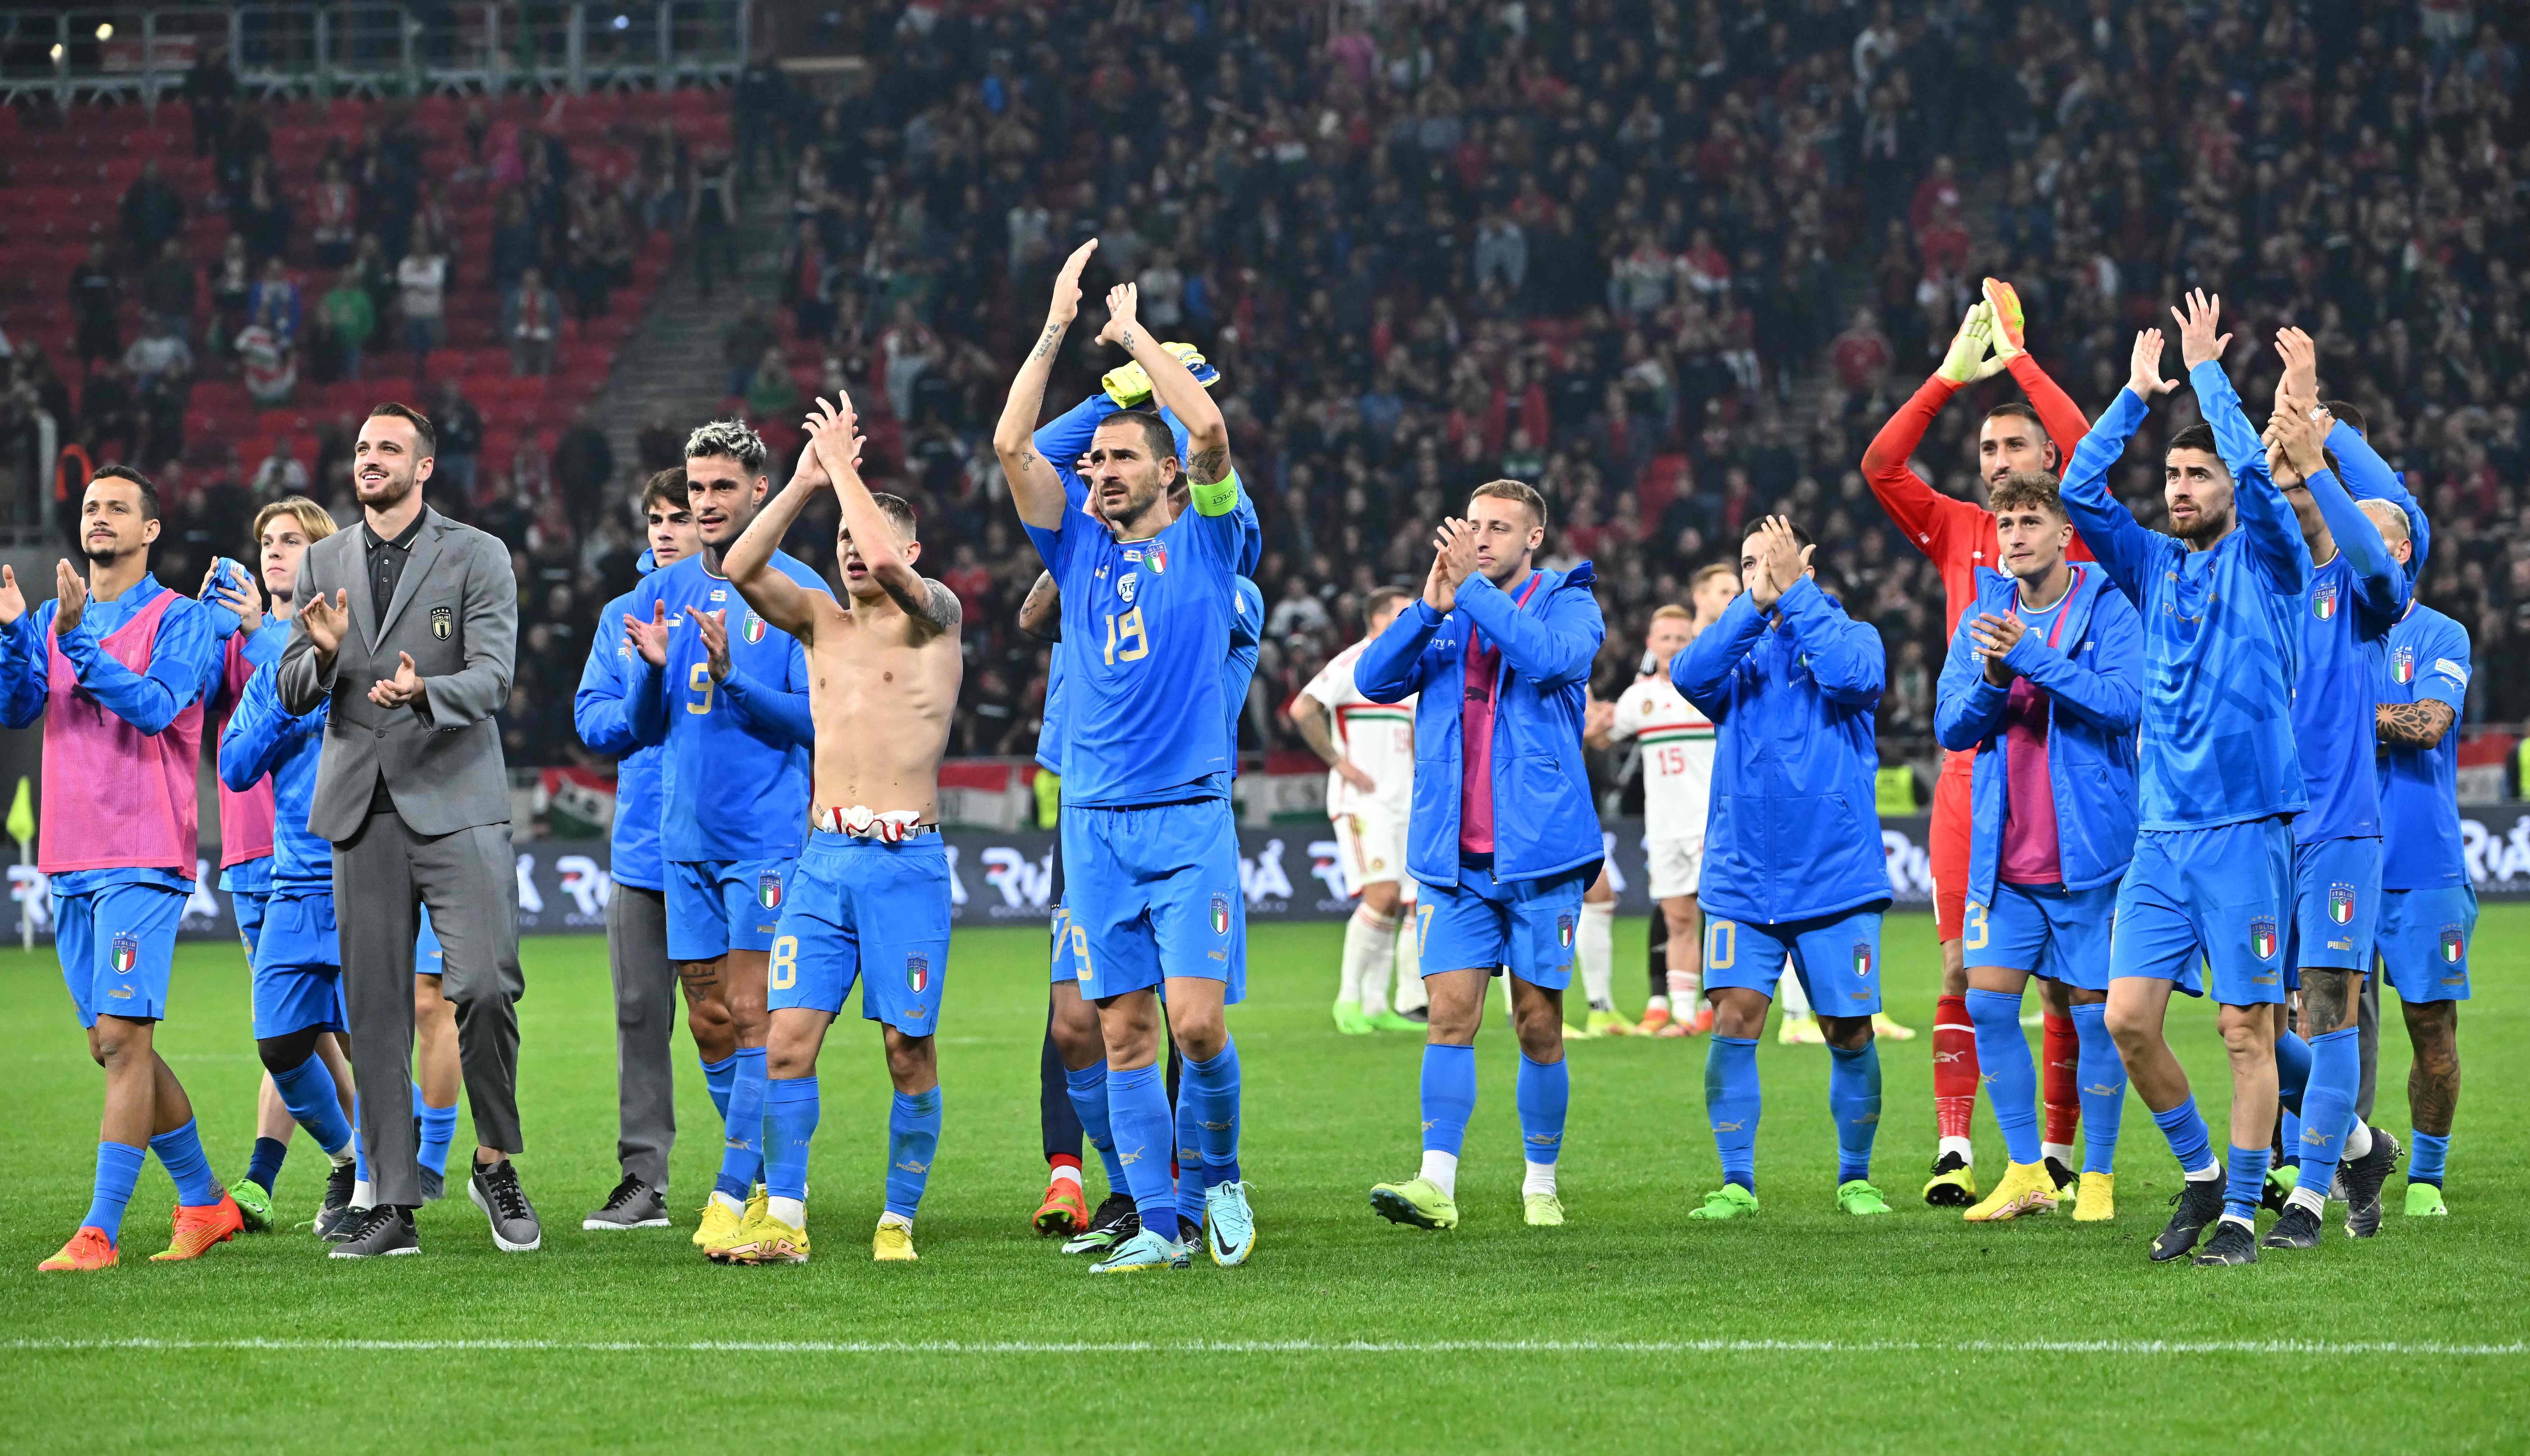 Italia, que no jugará el Mundial de Qatar 2022, sueña con alzar la Copa de campeón de la Nations League el año entrante. (Foto Prensa Libre: AFP)